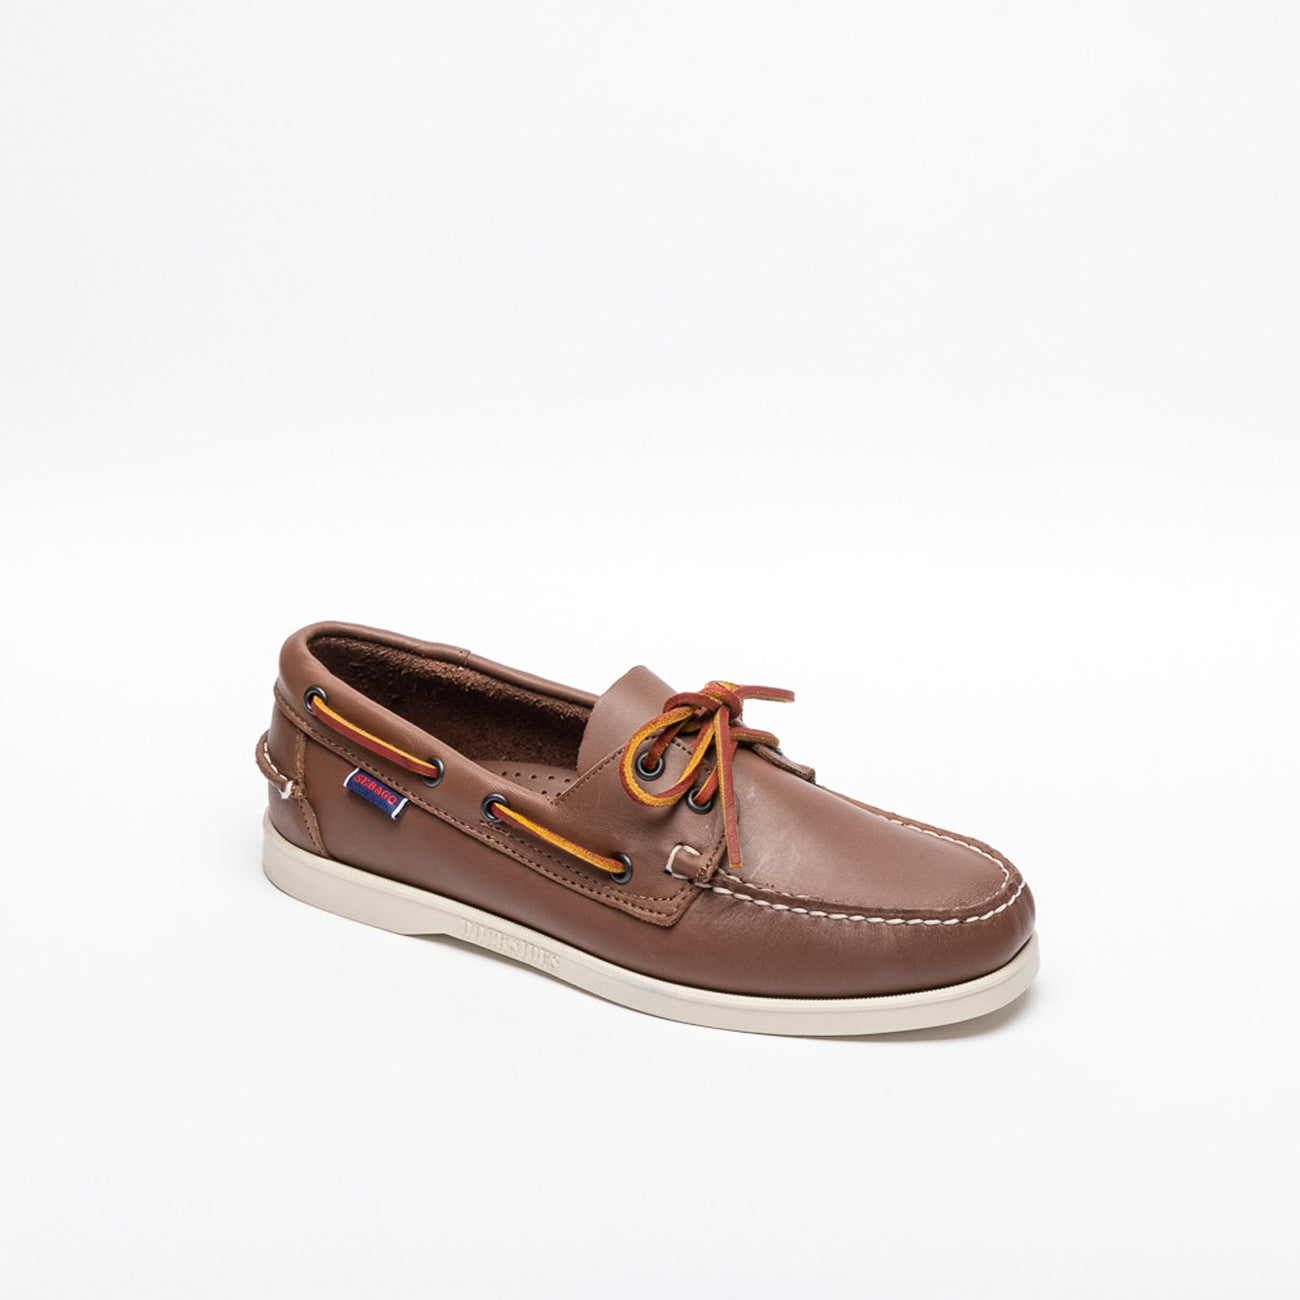 Sebago Docksides brown leather loafer